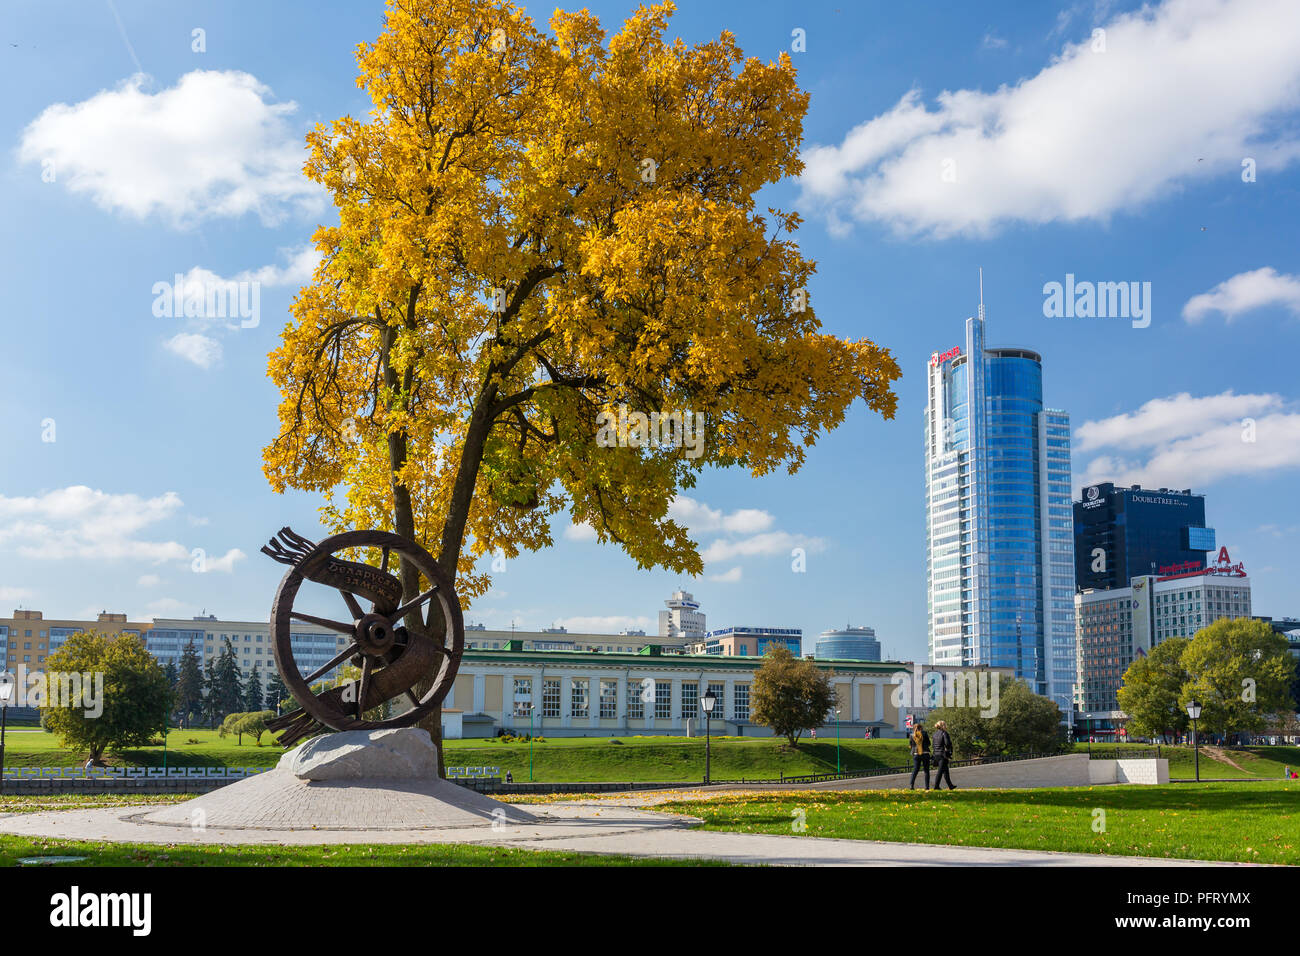 Minsk, Belarus - 27 septembre 2017 : Monument aux Bélarusses loin de leur patrie près de la Trinité sur le remblai Svisloch Banlieue Banque D'Images